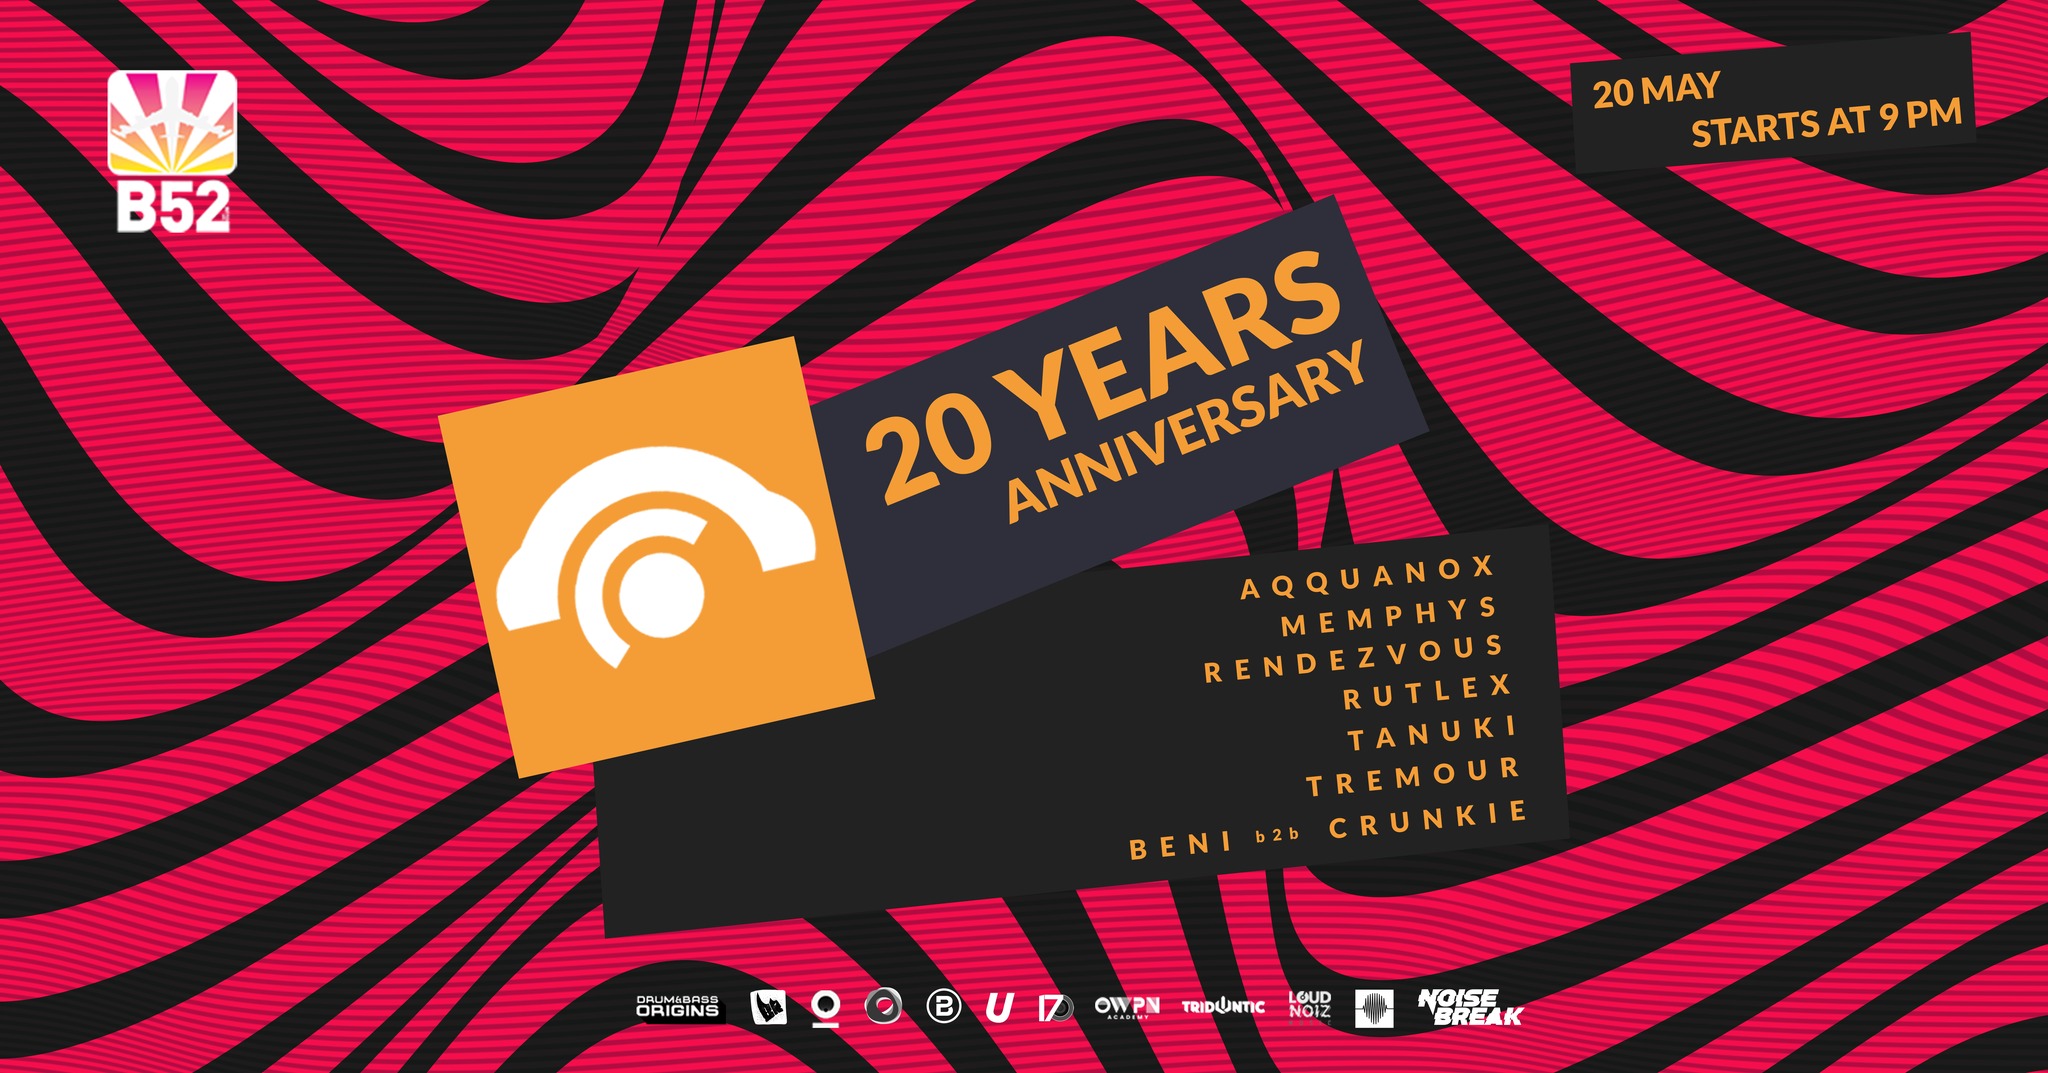 20 years of DrumAndBass.ro